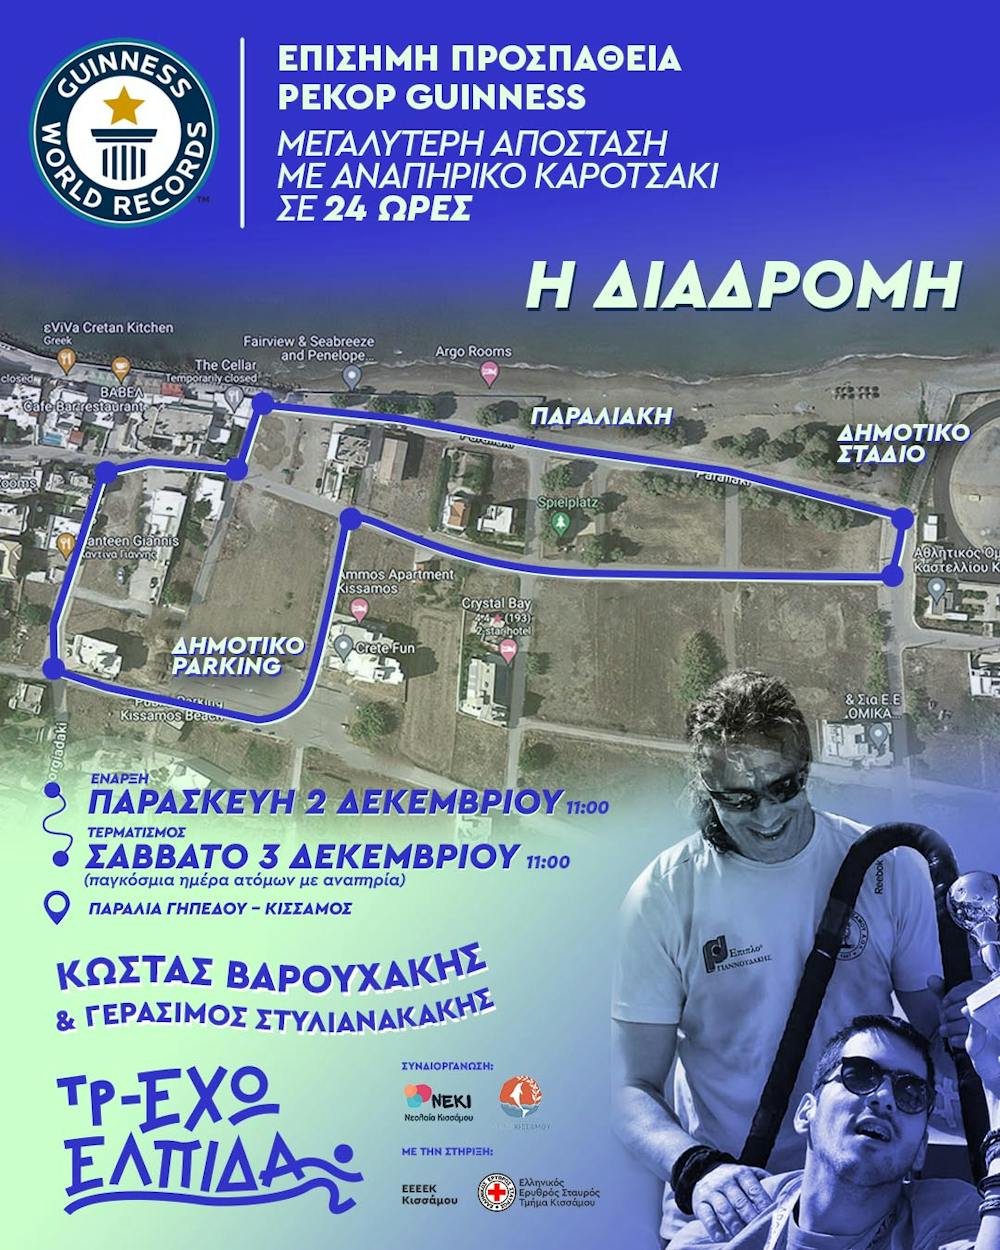 Κ. Βαρουχάκης – Γ. Στυλιανακάκης: Η διαδρομή που θα ακολουθήσουν για το ρεκόρ Γκίνες! (Pic) runbeat.gr 